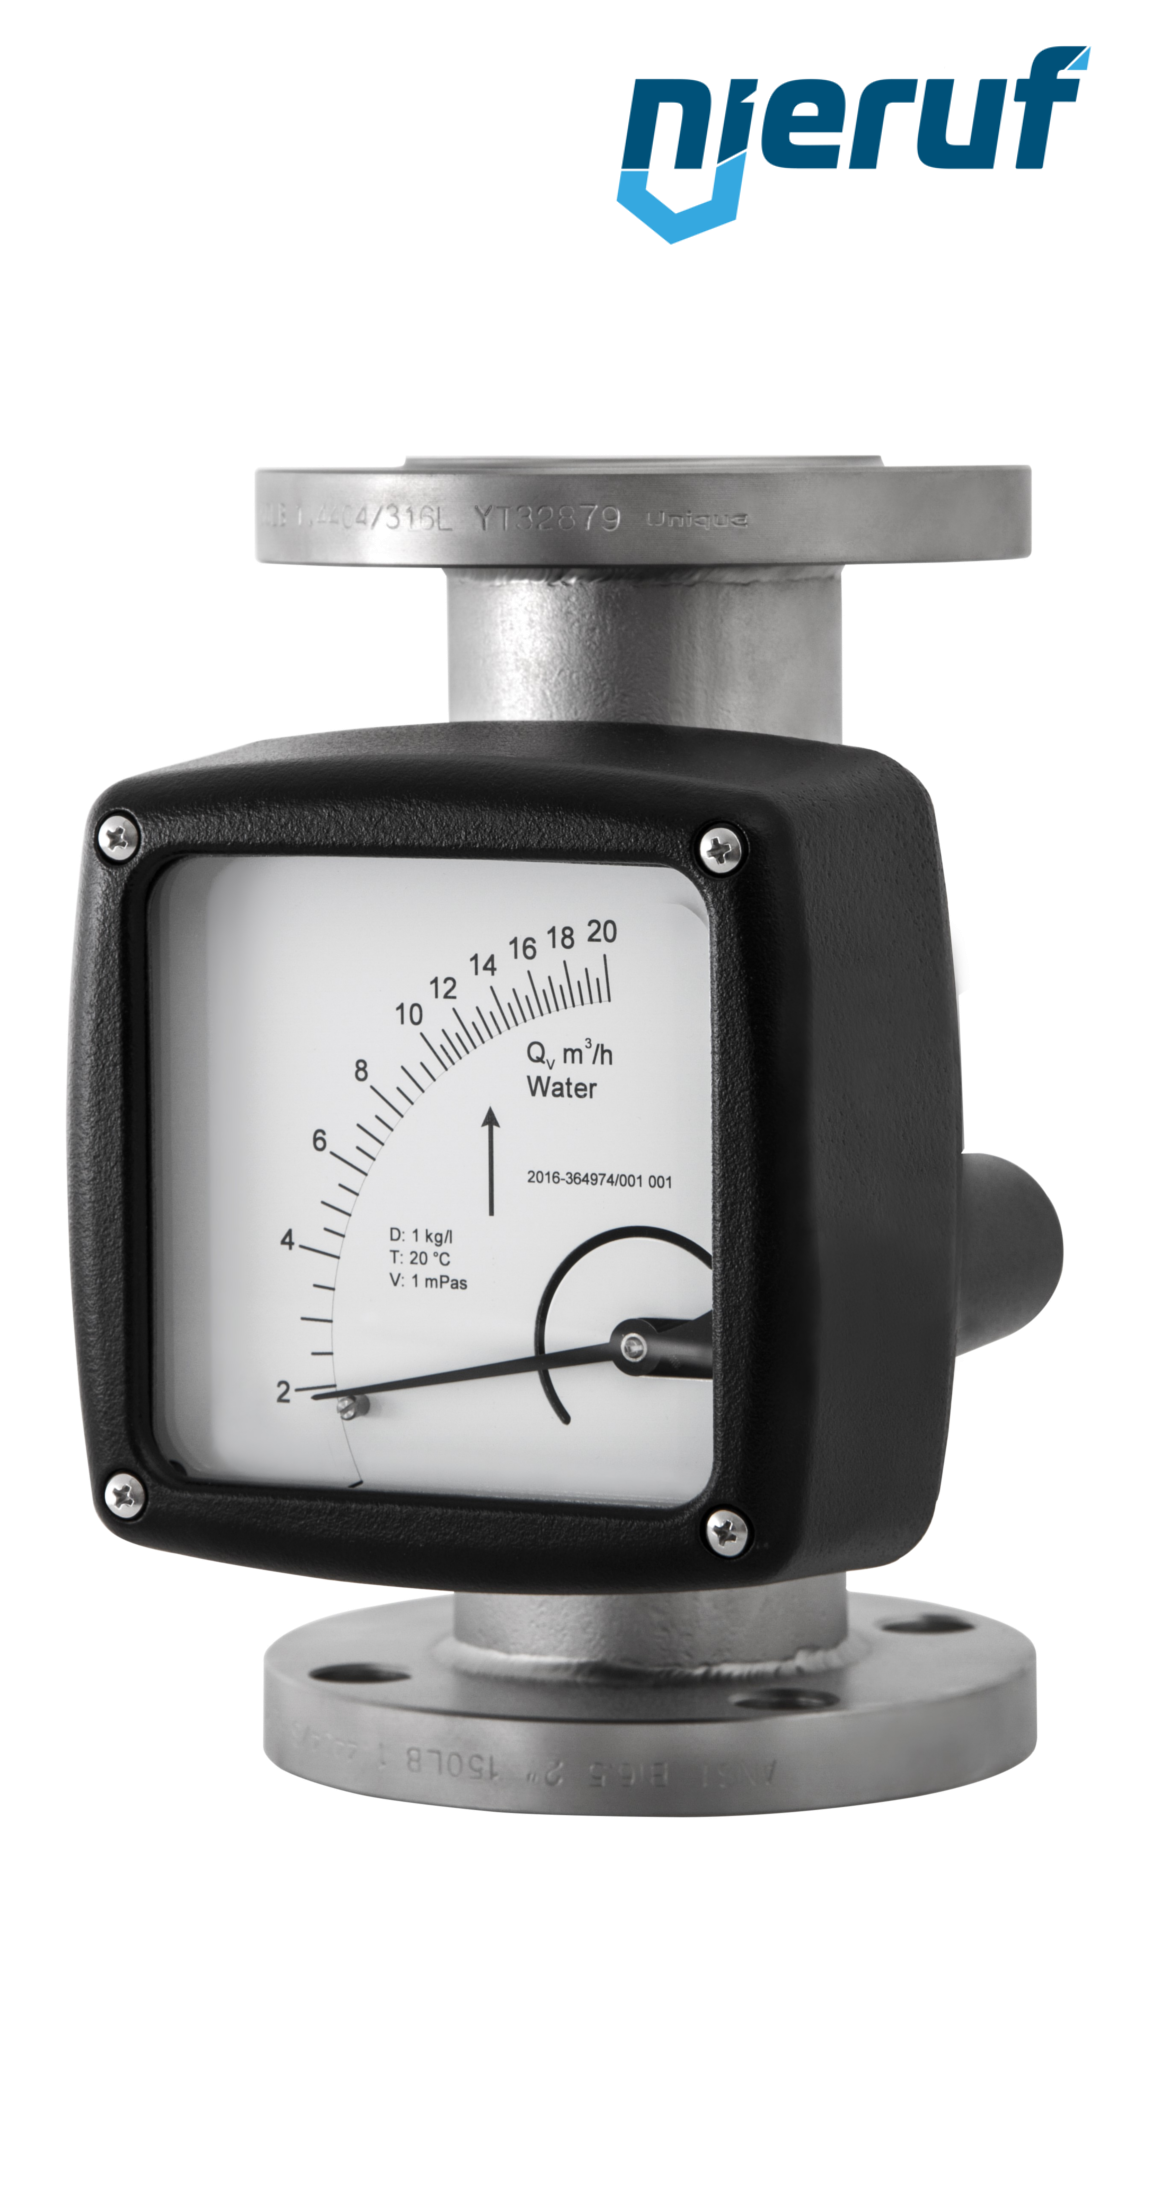 misuratore di flusso / rotametro completamente in metallo DN100-attacco 400,0 - 4000,0 l/h tubo DN50 acqua